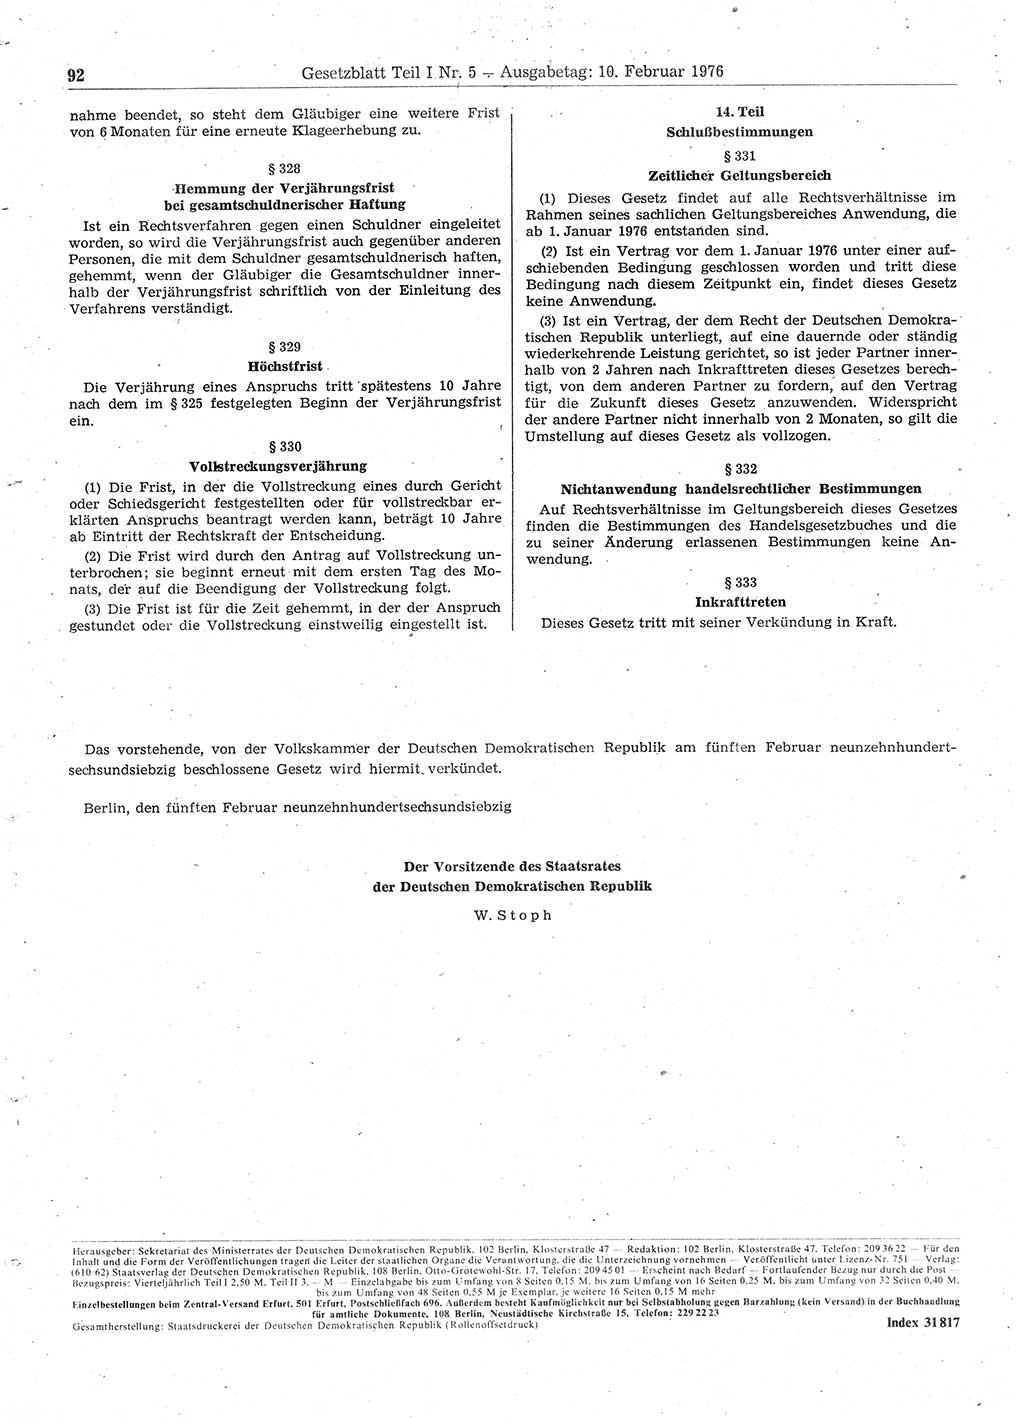 Gesetzblatt (GBl.) der Deutschen Demokratischen Republik (DDR) Teil Ⅰ 1976, Seite 92 (GBl. DDR Ⅰ 1976, S. 92)